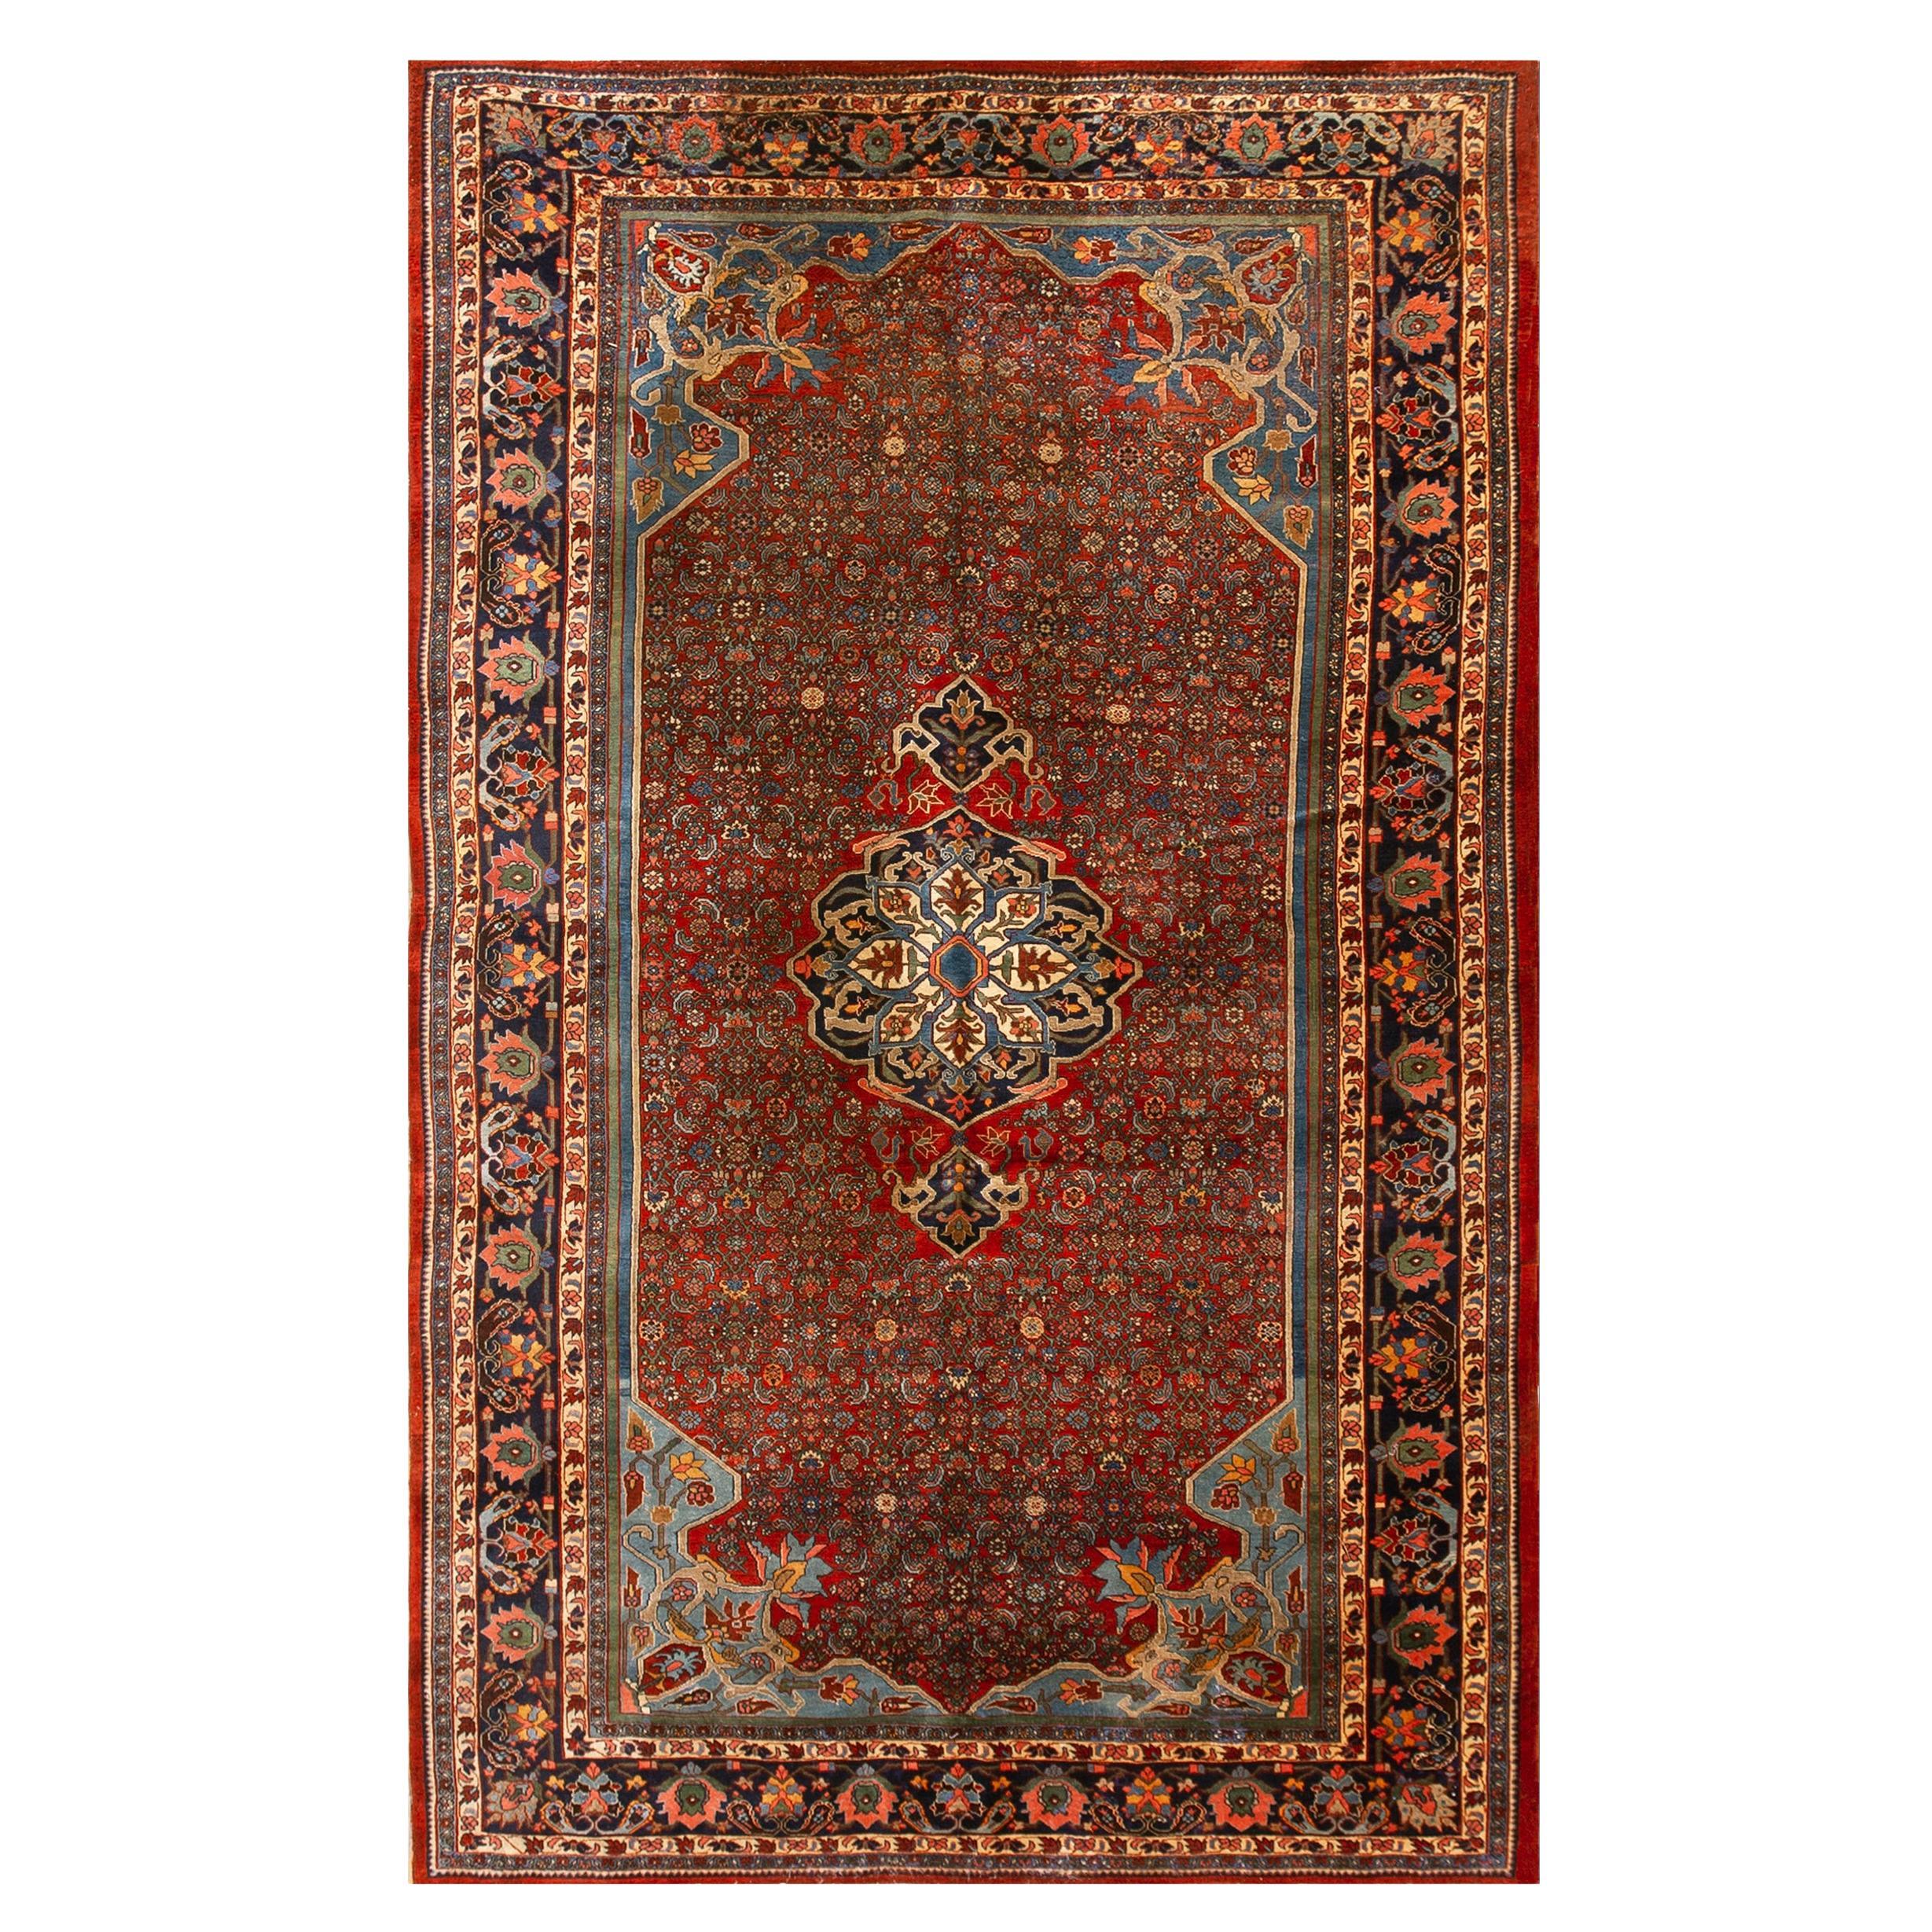 Persischer Bijar-Teppich des frühen 20. Jahrhunderts ( 7'6" x 12' - 230 x 365 )